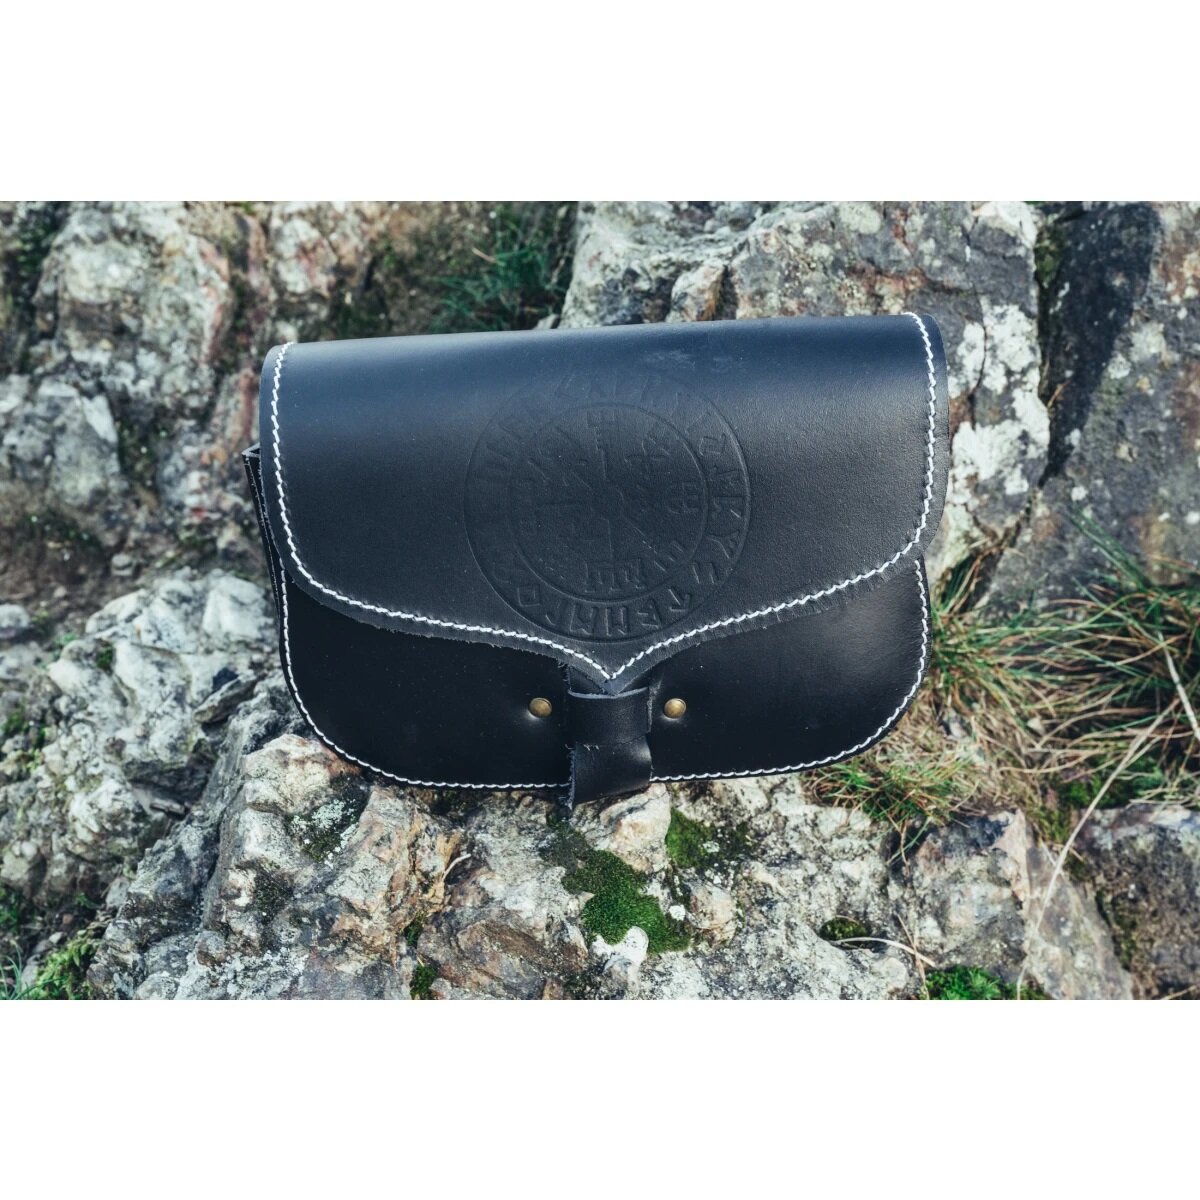 Viking belt bag black leather "Folkvar" with...